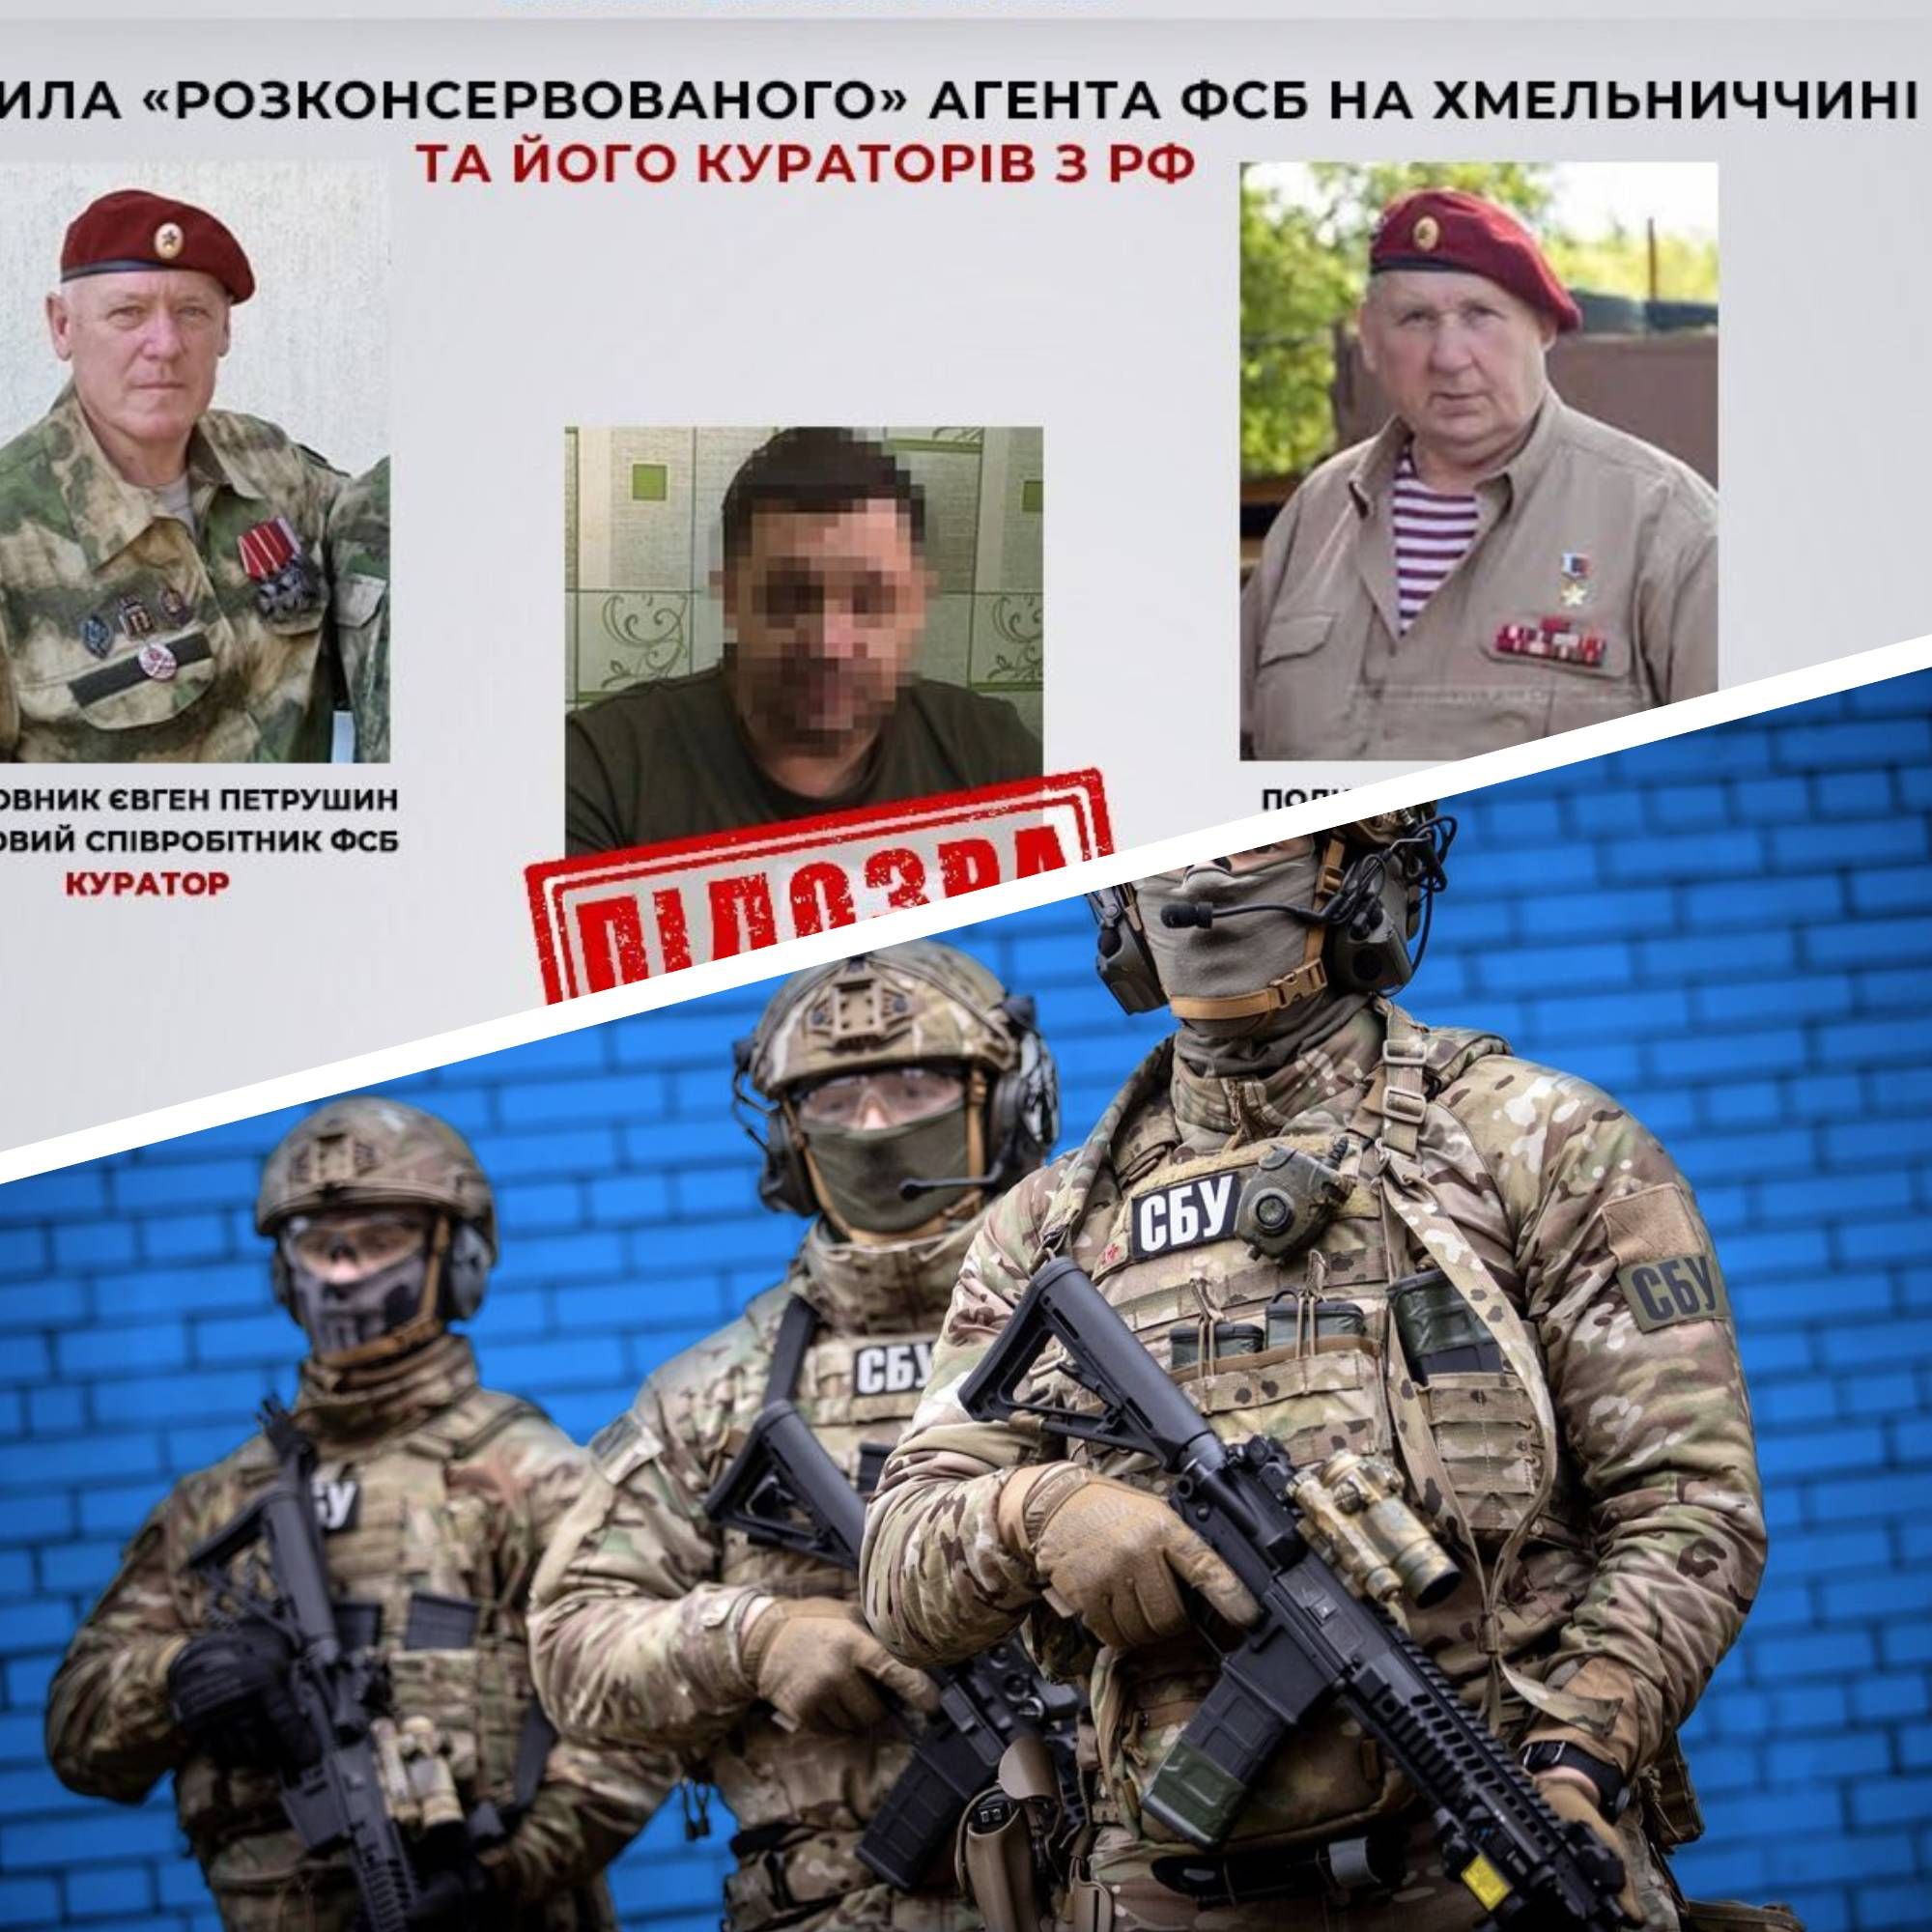 Агент ФСБ - в Хмельницкой области действовал расконсервированный агент ФСБ